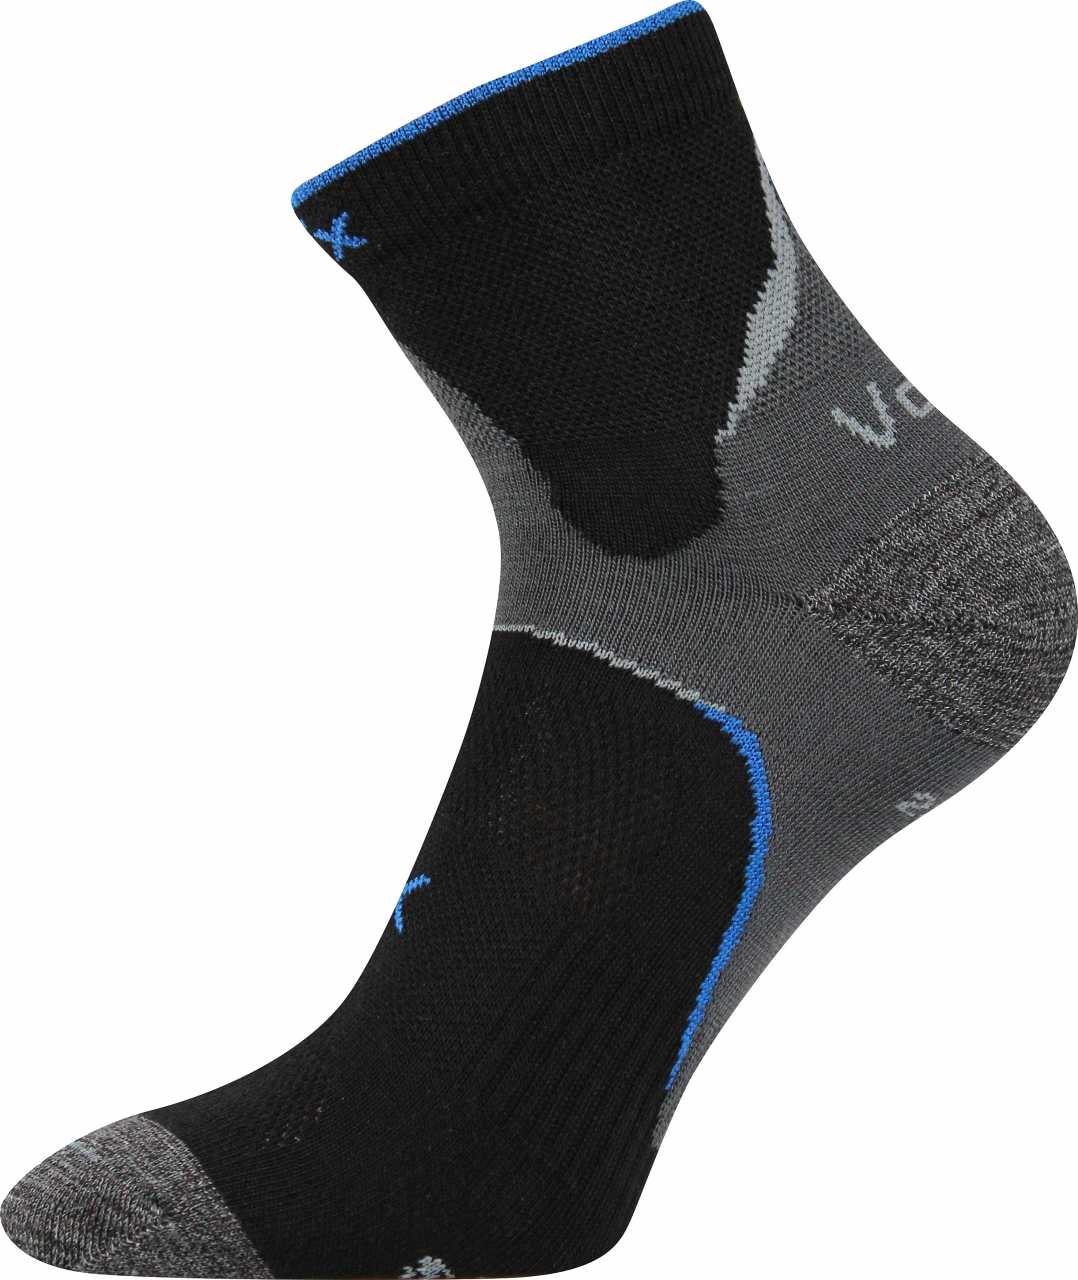 Ponožky antibakteriální Voxx Maxter silproX - černé-šedé, 43-46